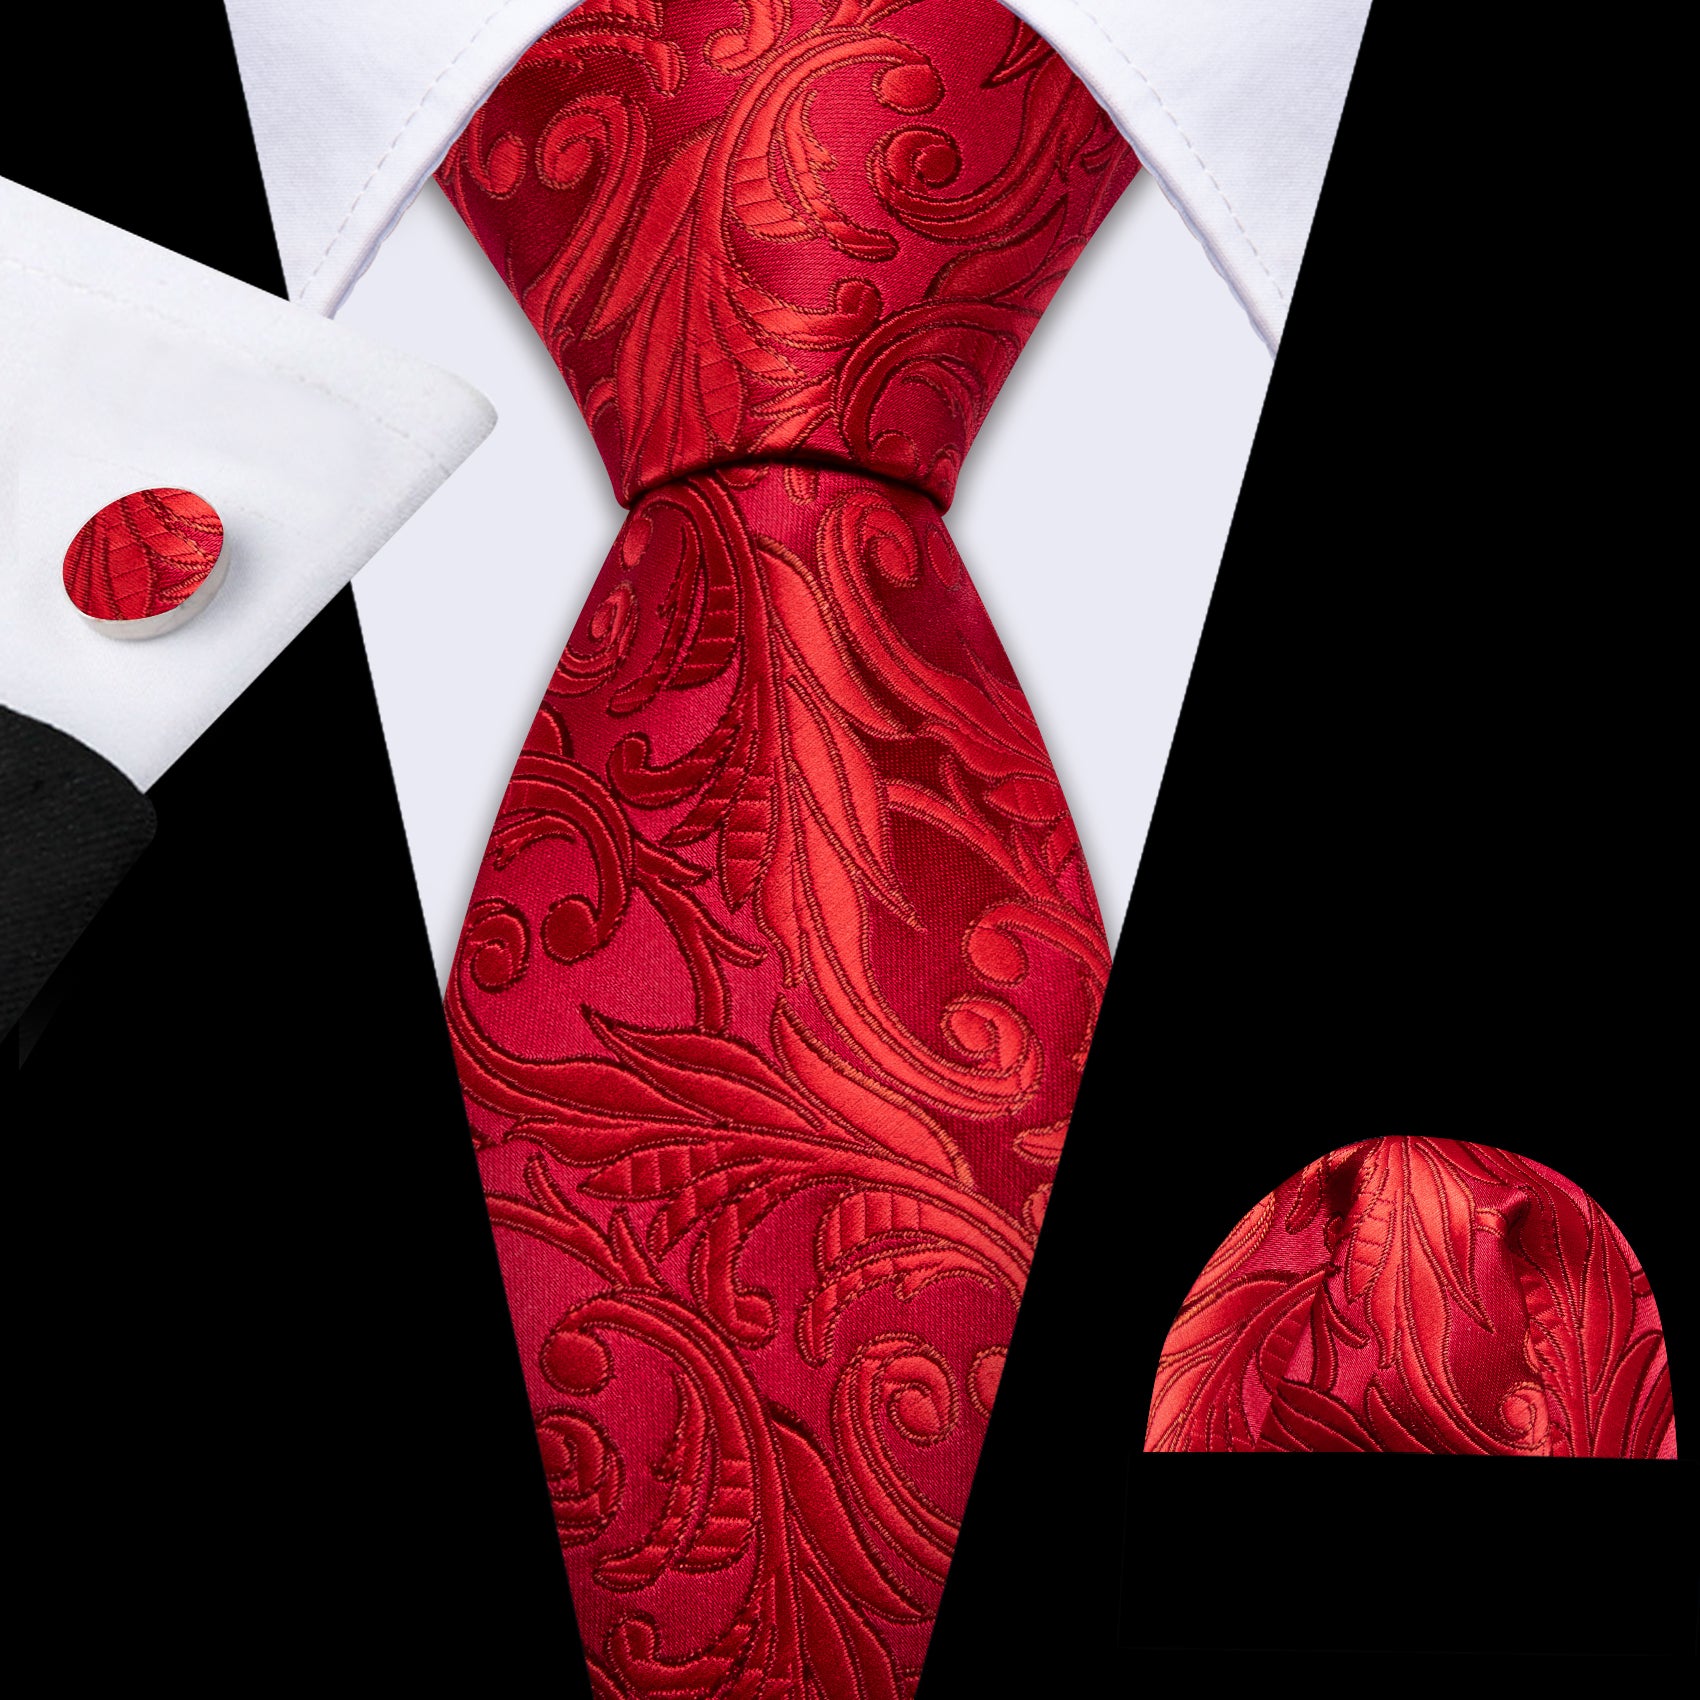 Red Floral Silk Tie Handkerchief Cufflinks Set